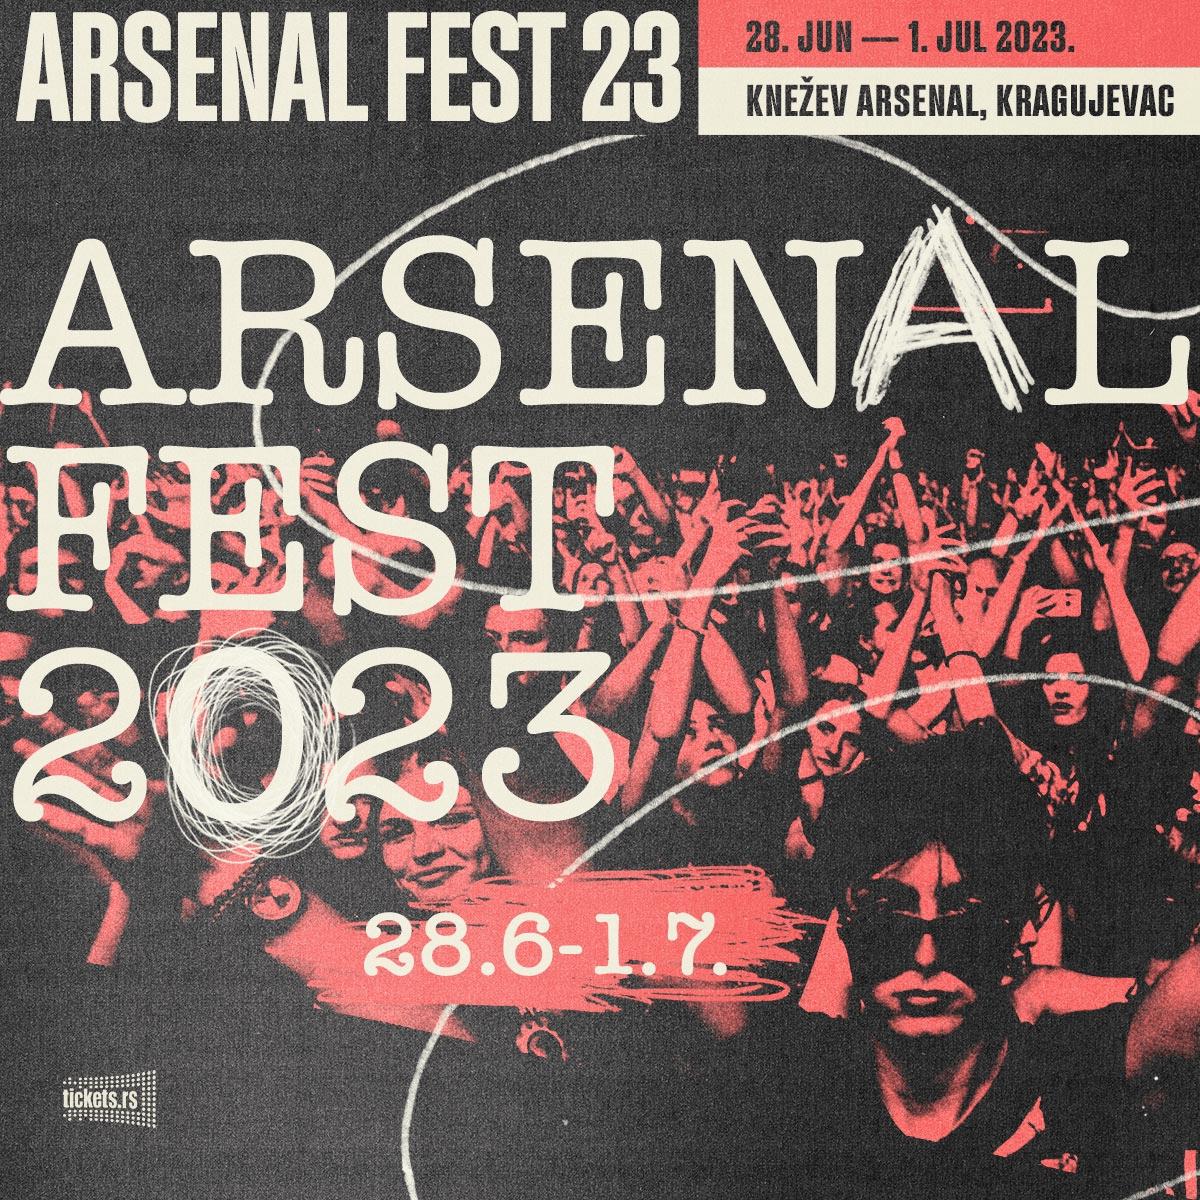 Arsenal Fest